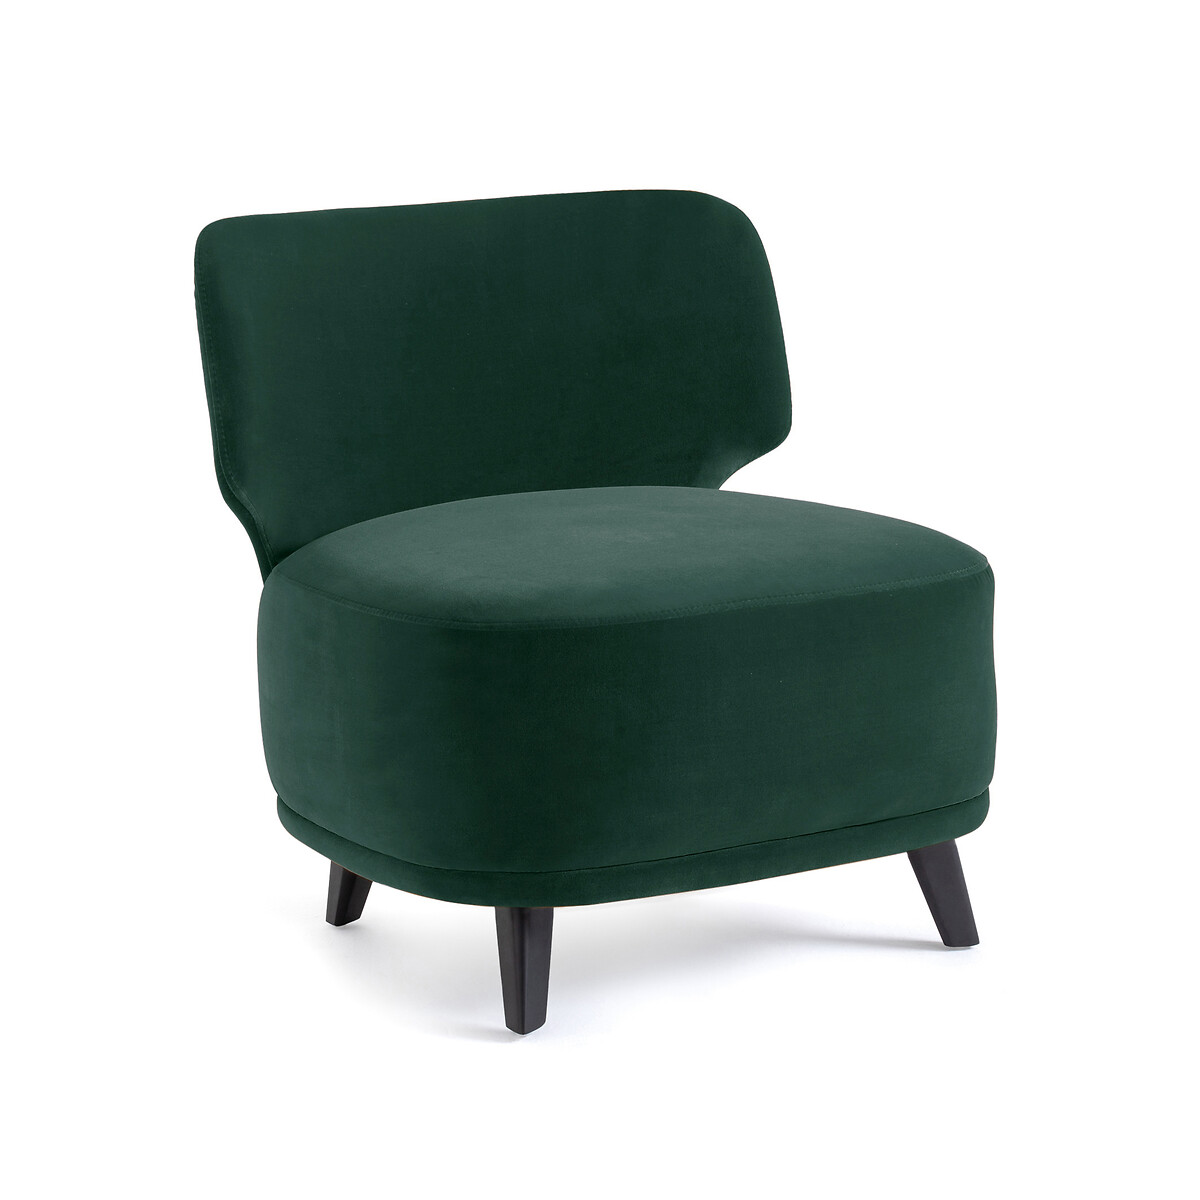 Кресло из велюра Odalie размер XL дизайн Э Галлины единый размер зеленый кресло из велюра odalie размер xl дизайн э галлины единый размер зеленый